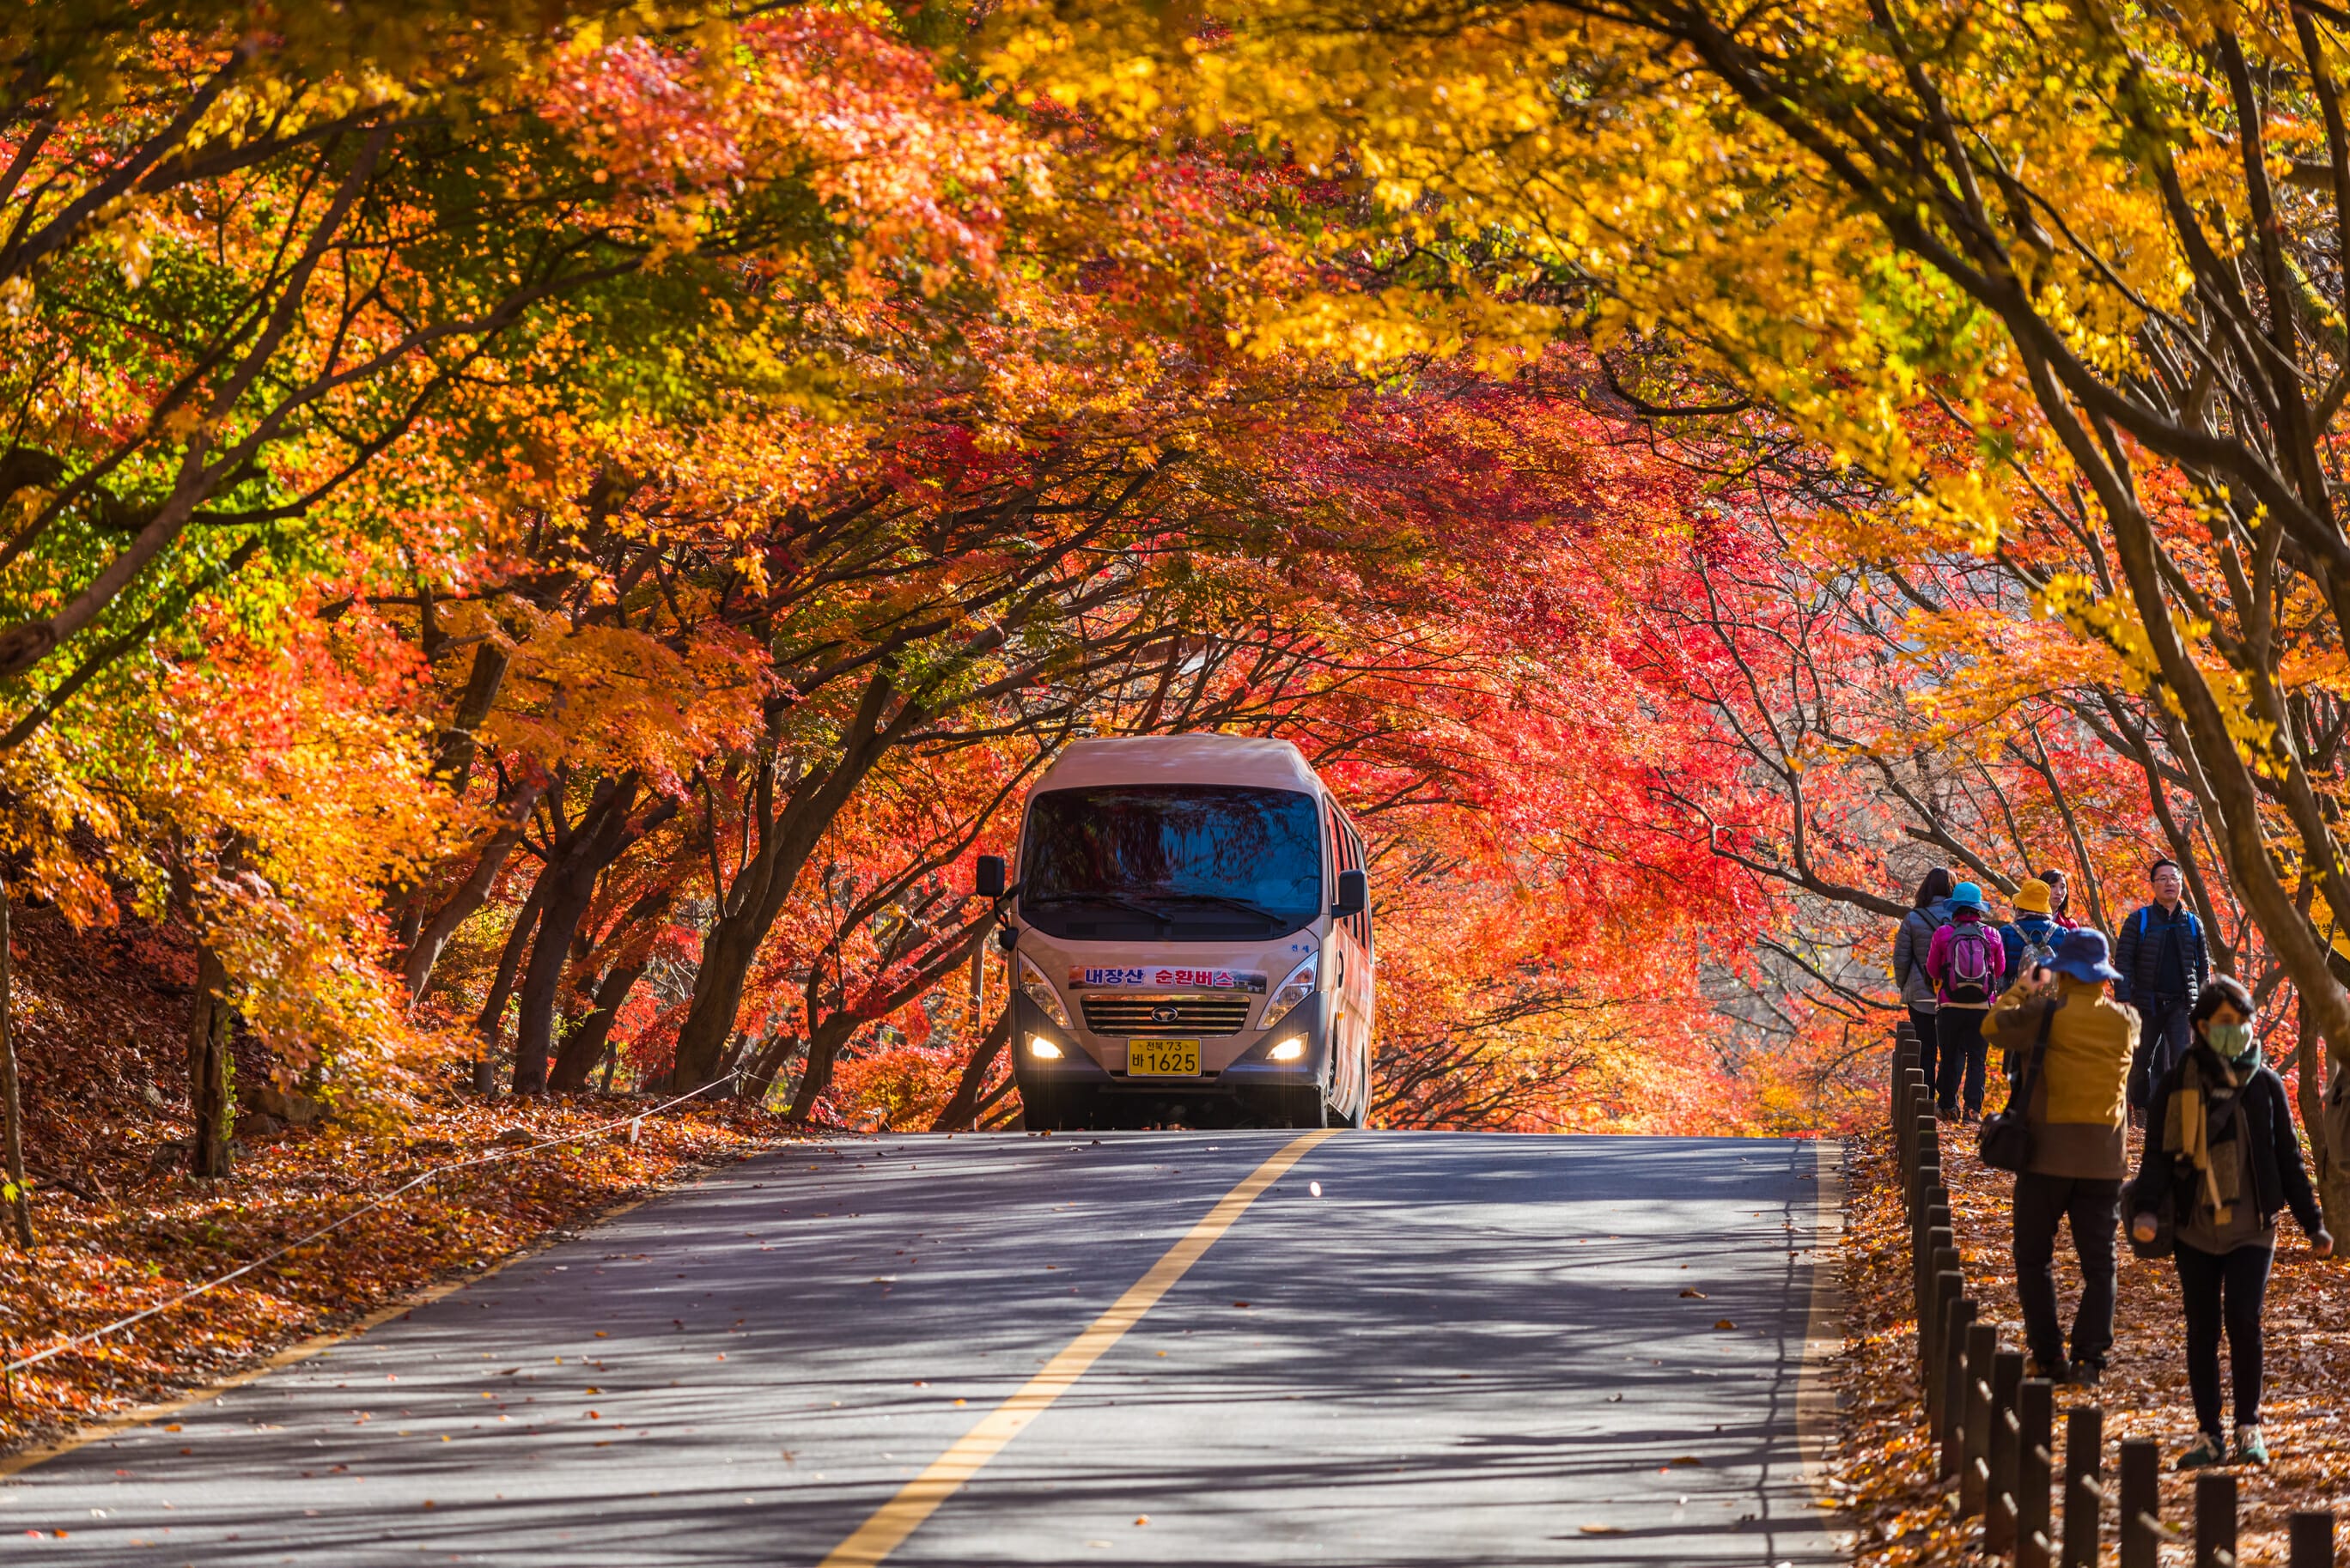 Autumn in Korea – Autumn Activities, Autumn Weather and More! 13